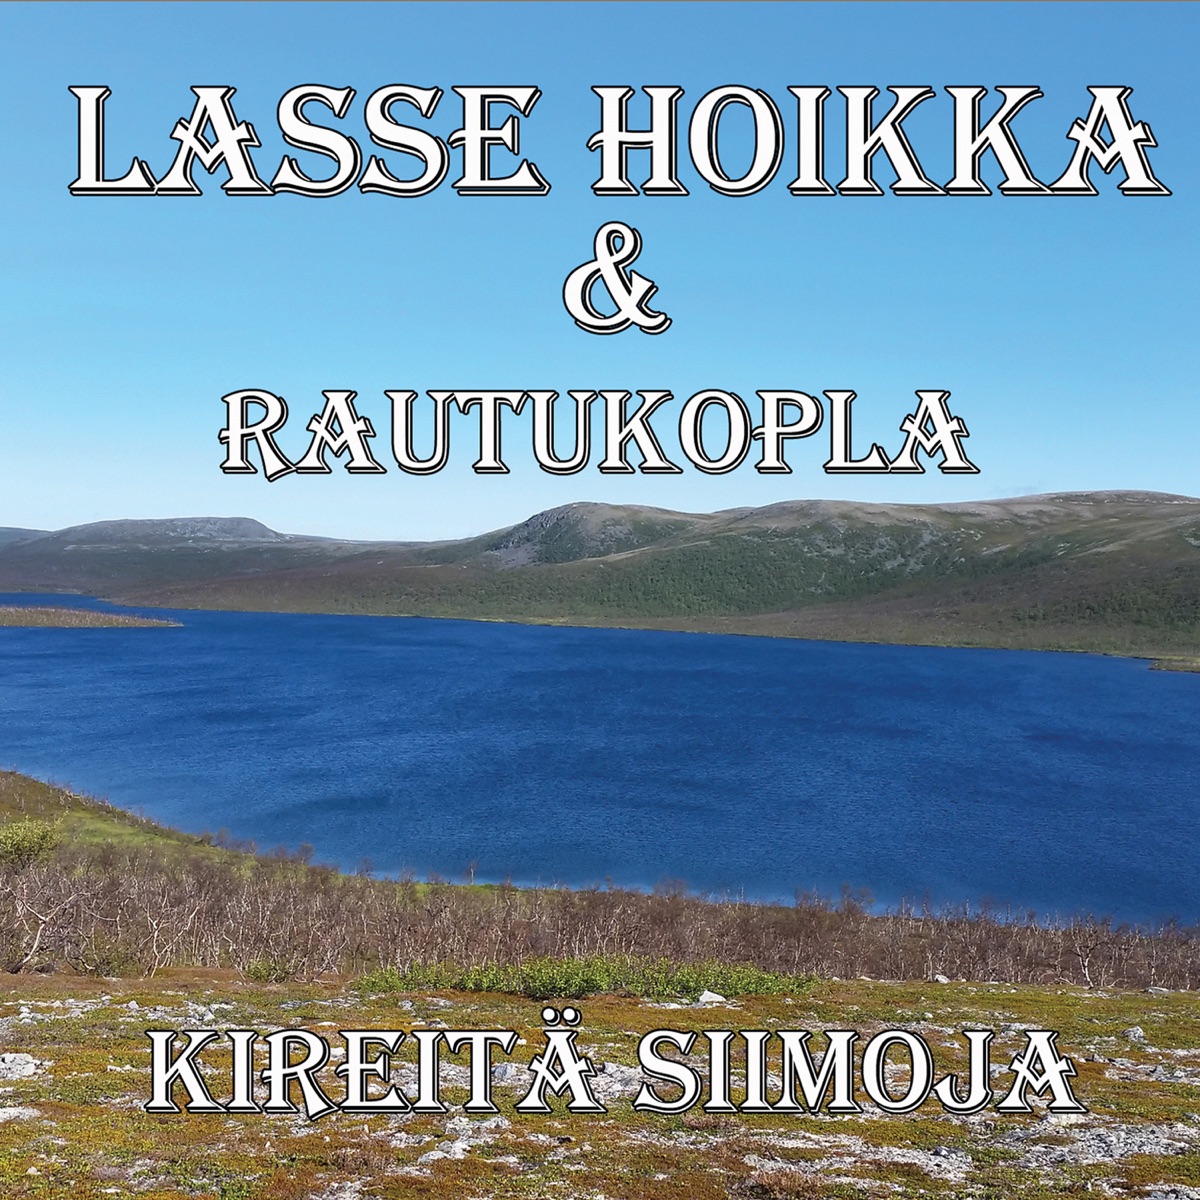 Kultakuume by Lasse Hoikka & Souvarit on Apple Music